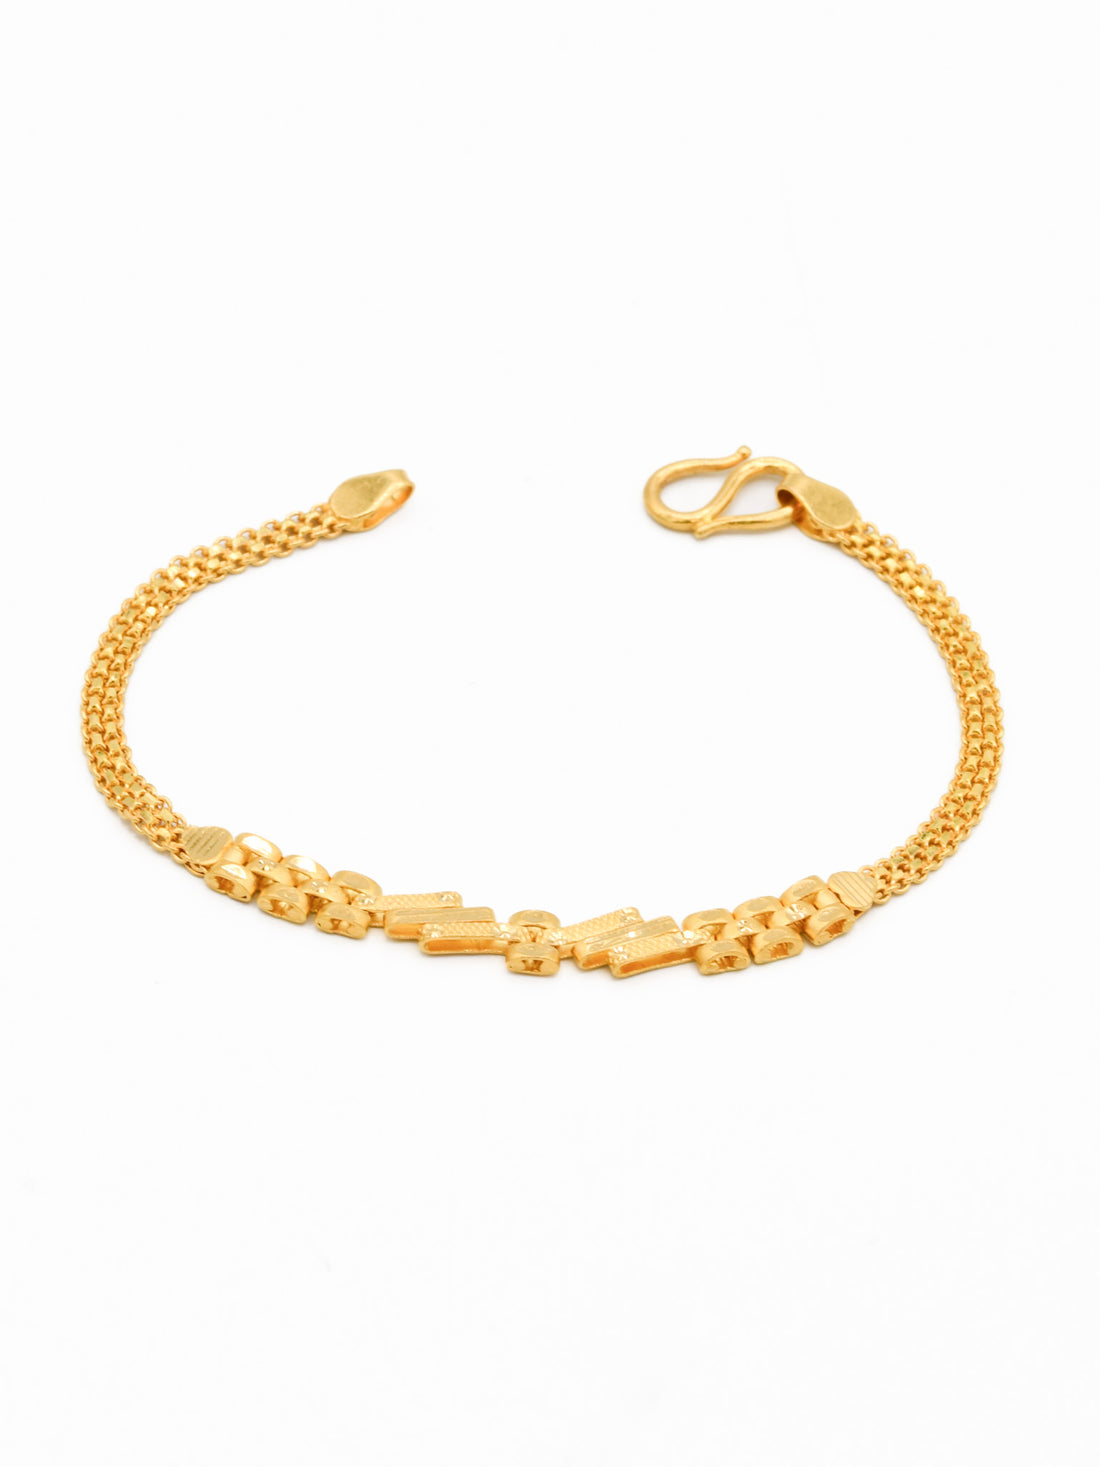 22ct Gold 1 PC Baby Bracelet - Roop Darshan